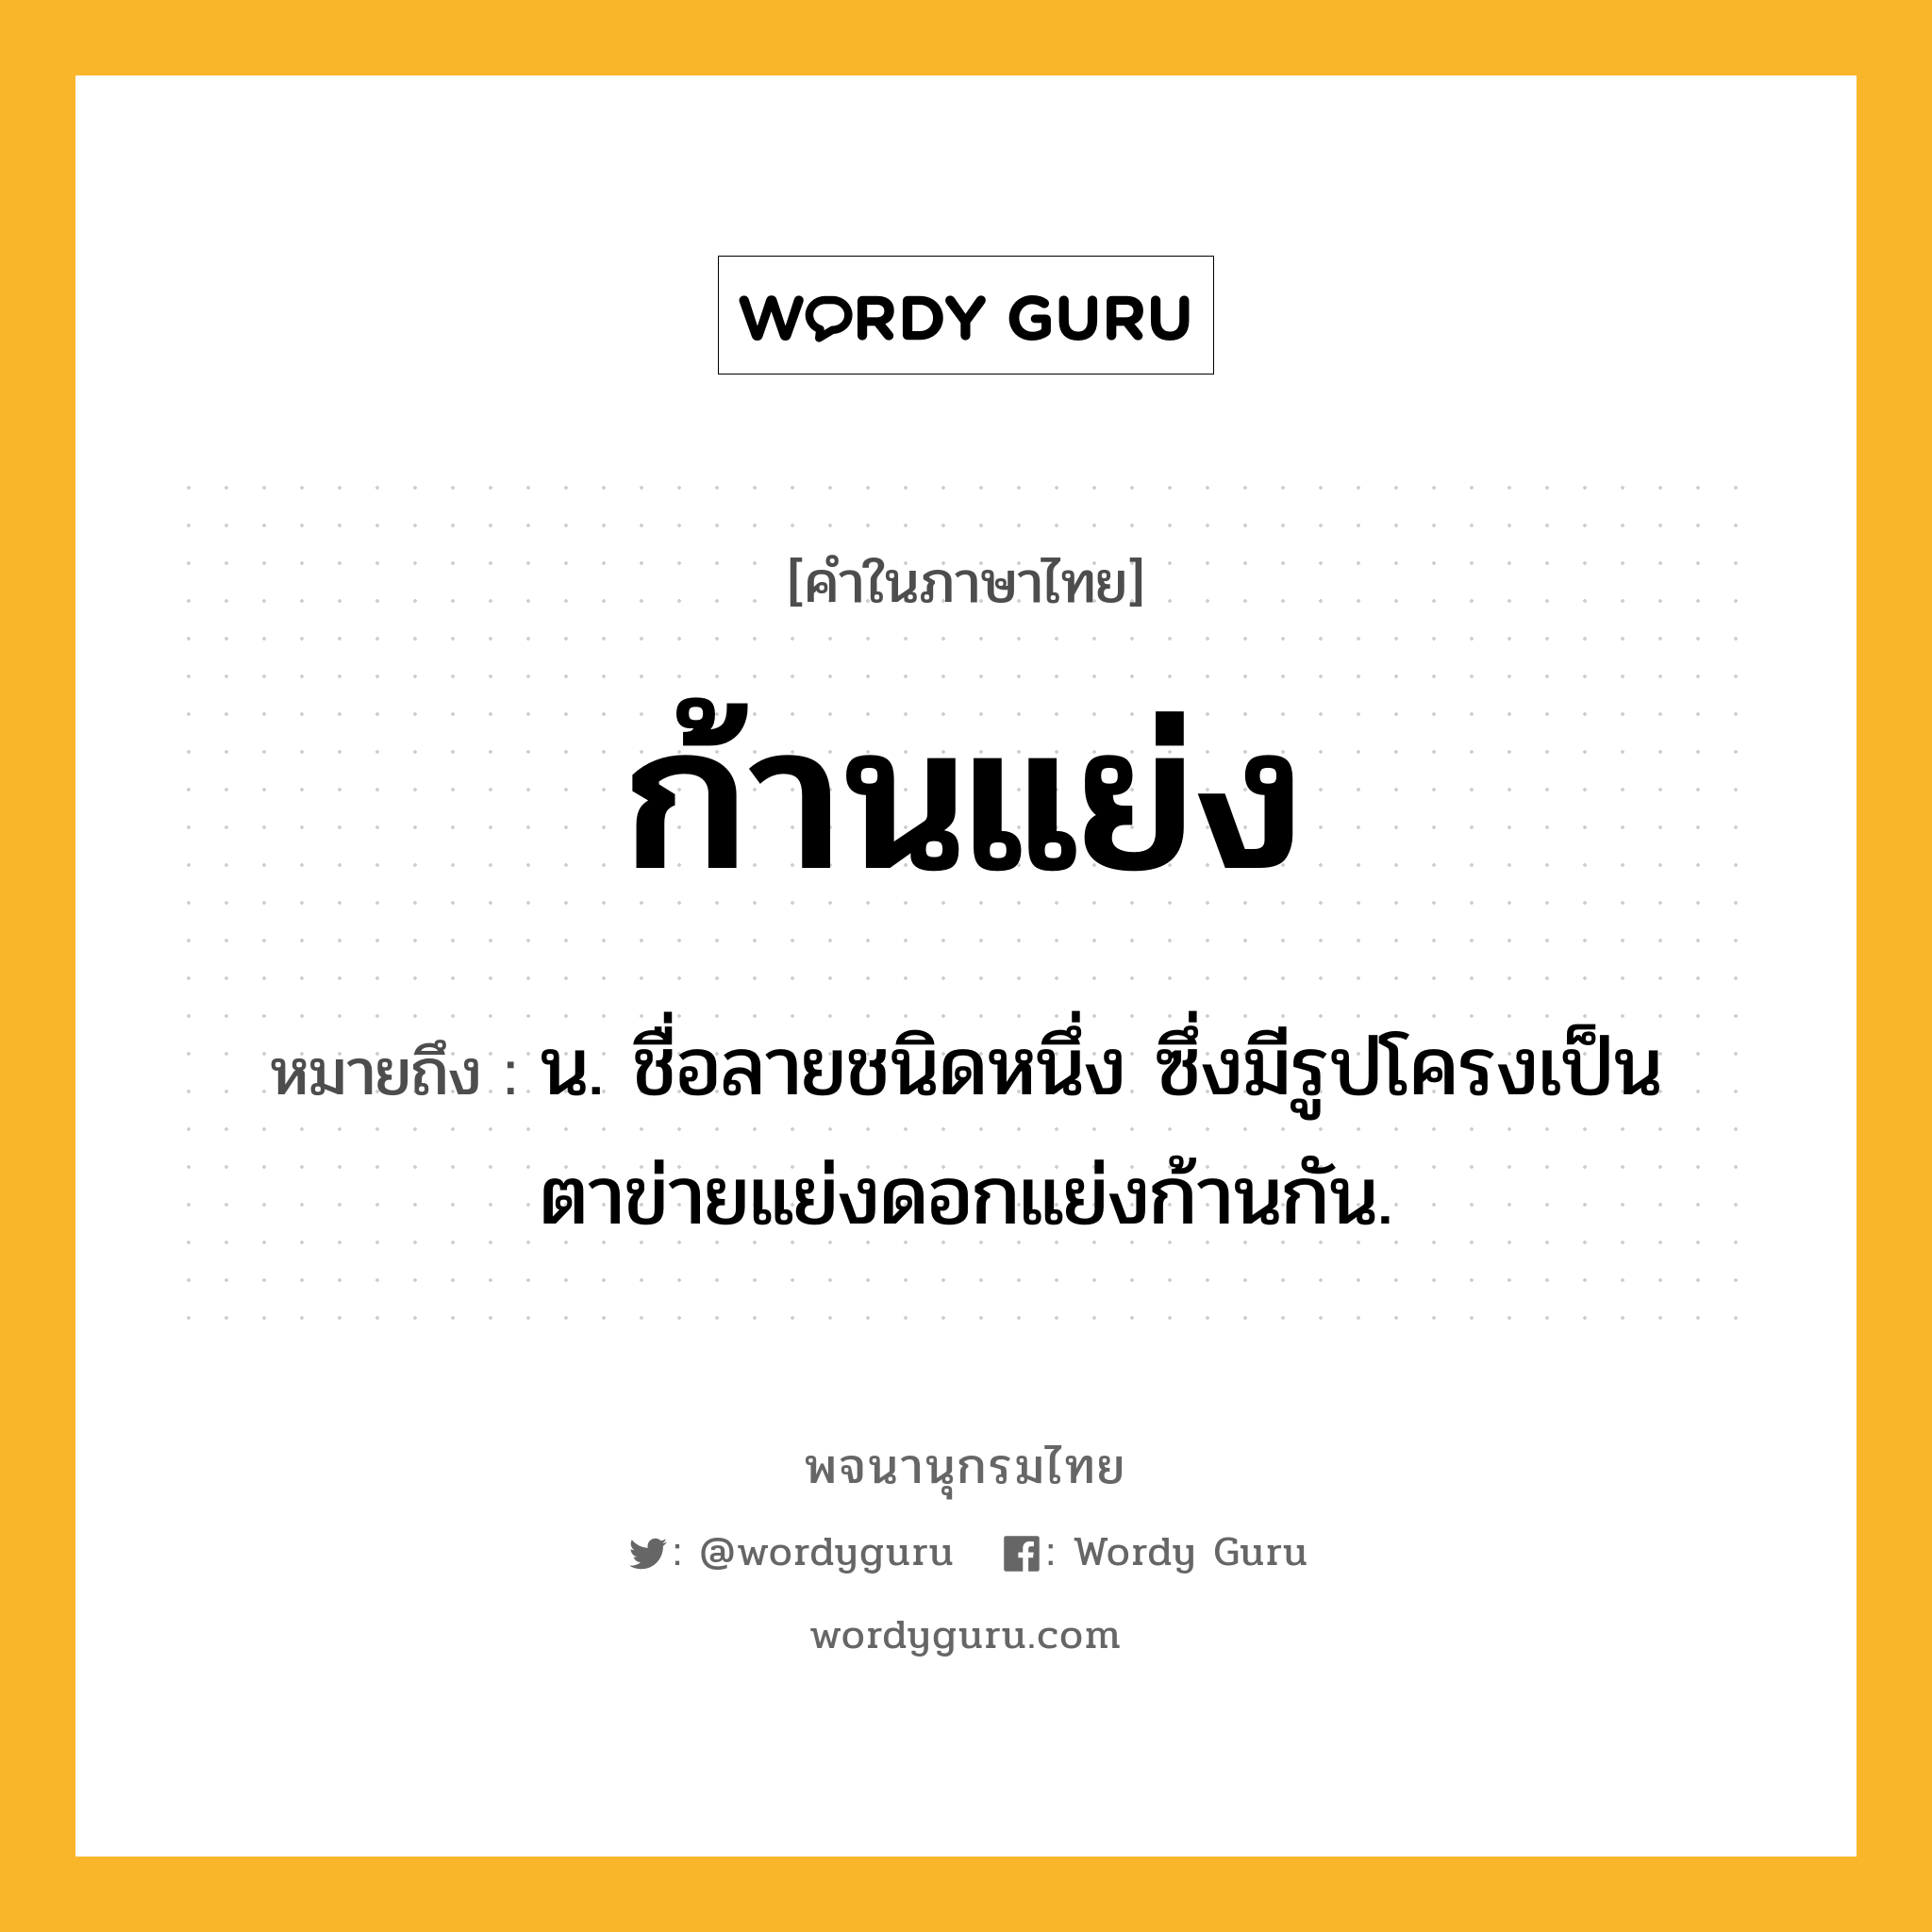 ก้านแย่ง หมายถึงอะไร?, คำในภาษาไทย ก้านแย่ง หมายถึง น. ชื่อลายชนิดหนึ่ง ซึ่งมีรูปโครงเป็นตาข่ายแย่งดอกแย่งก้านกัน.